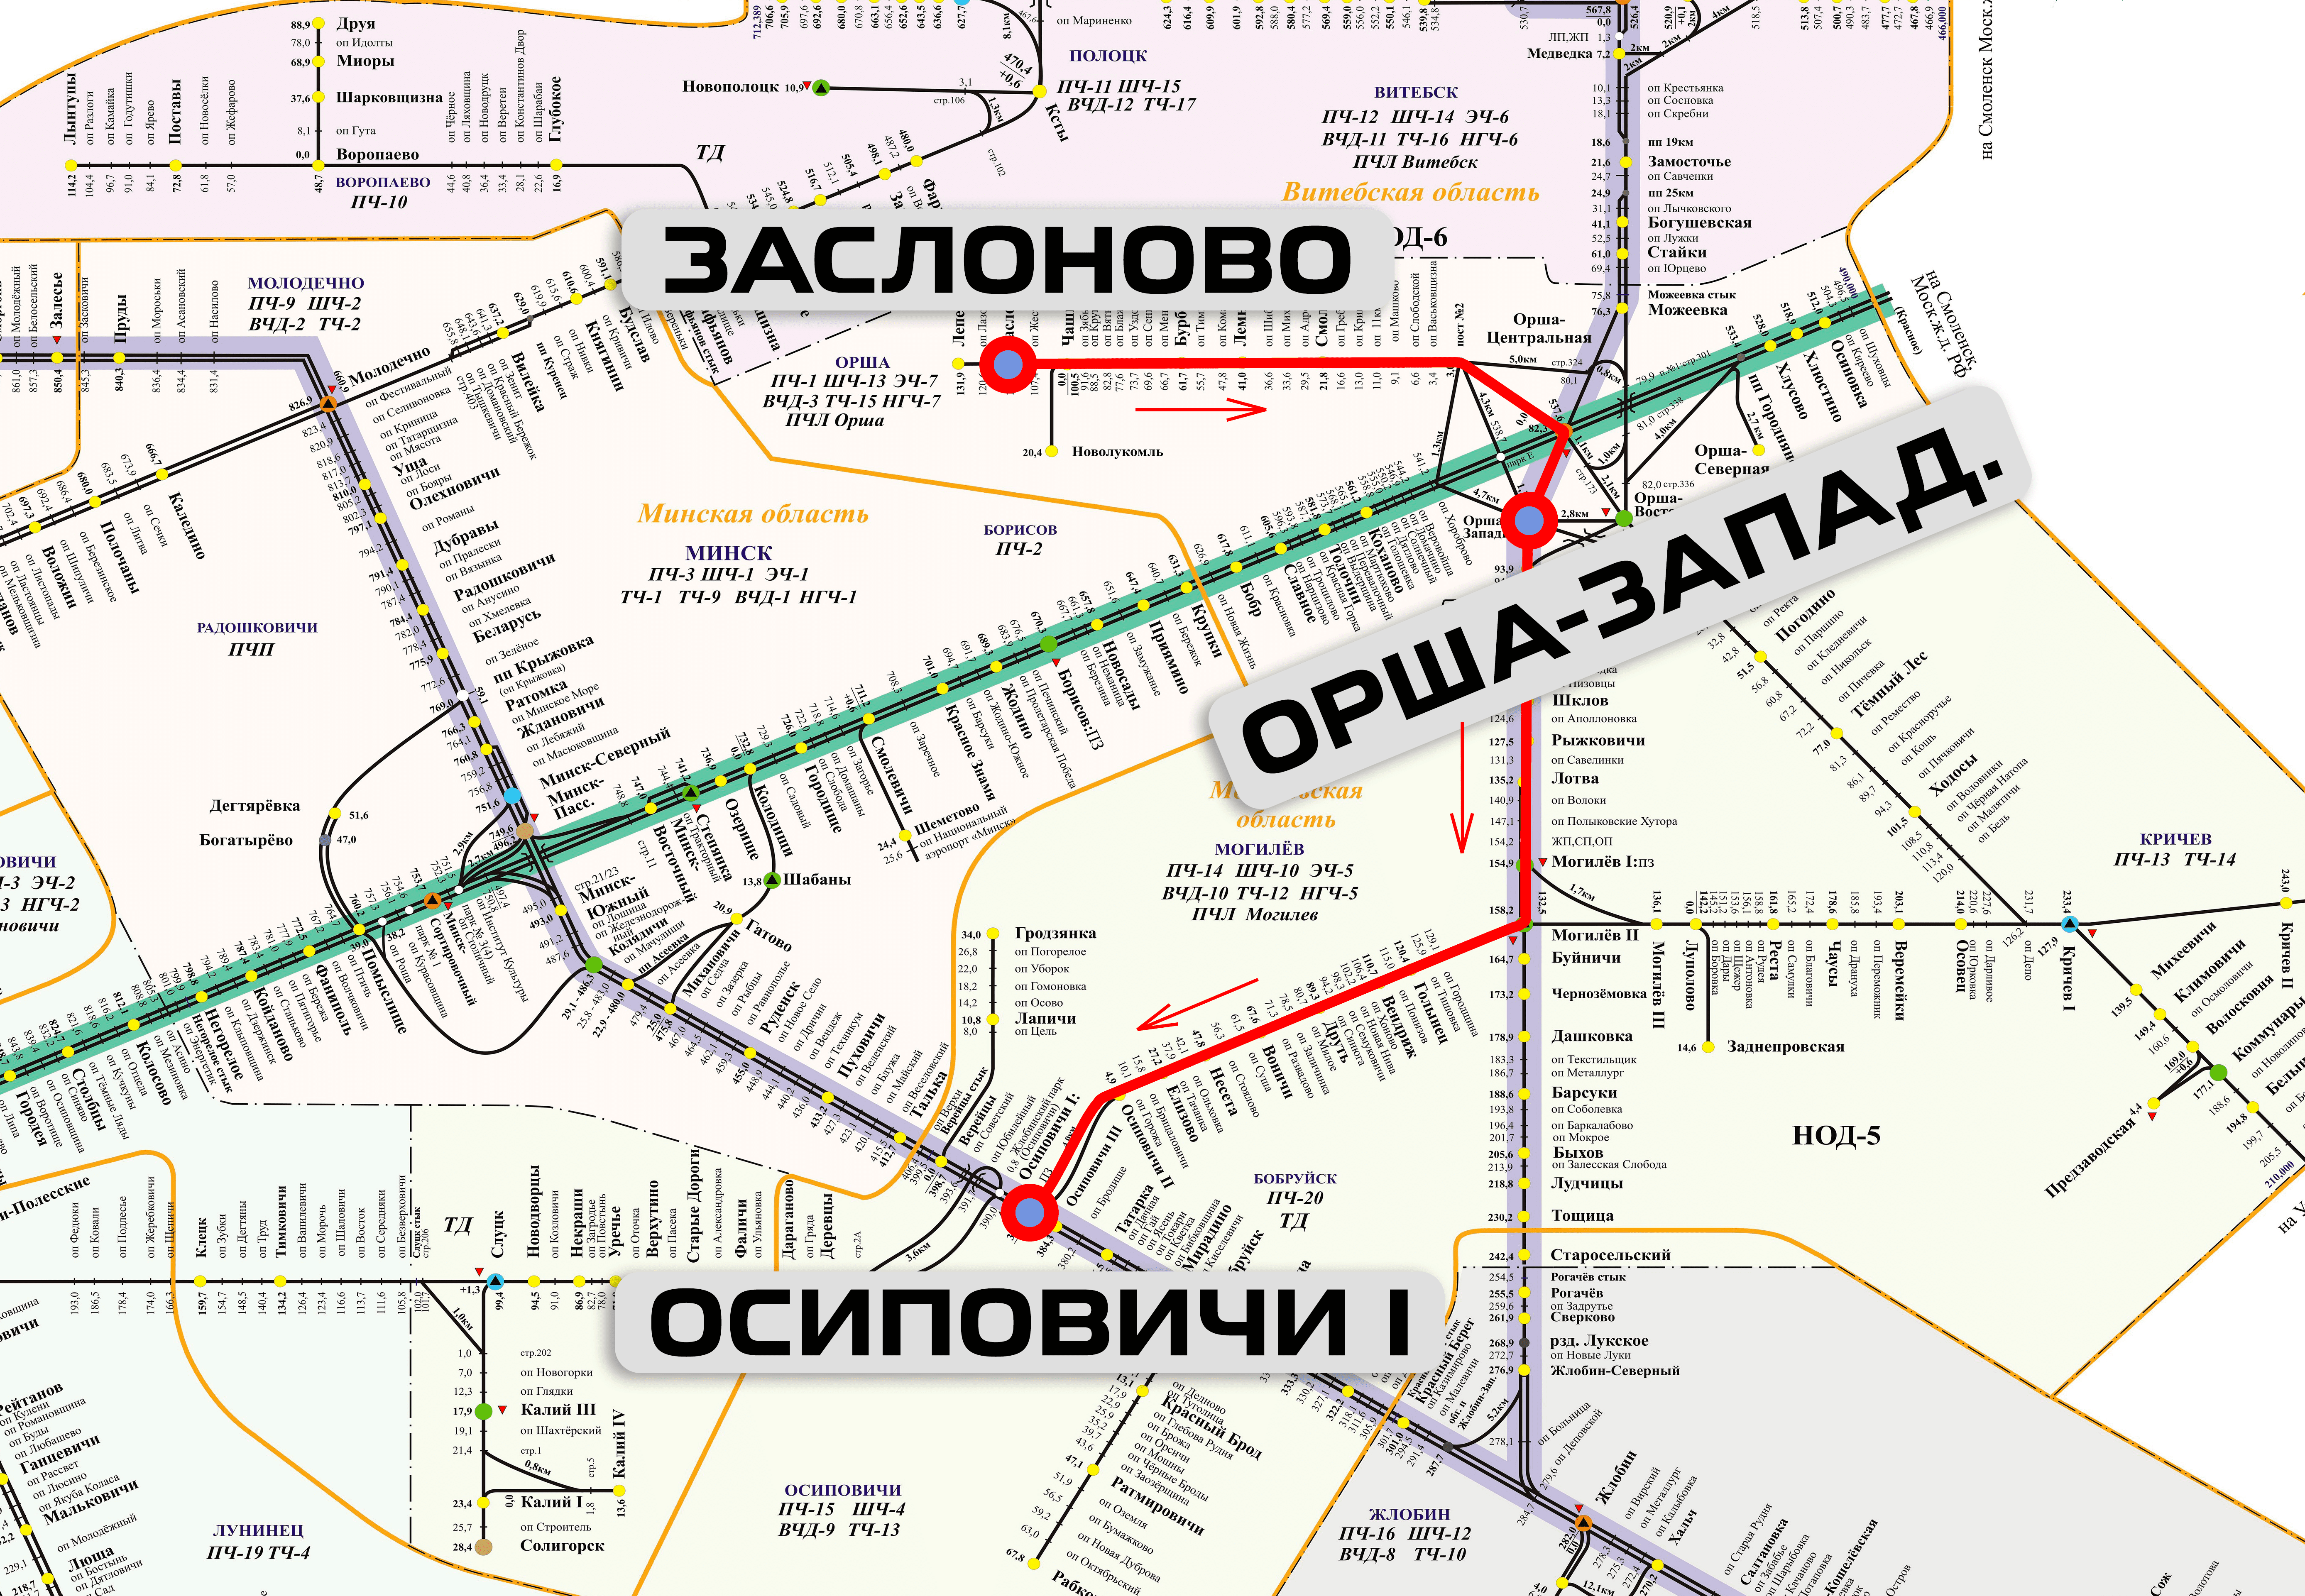 Маршрут следования воинского эшелона, отправленного со станции Заслоново на станцию Осиповичи I